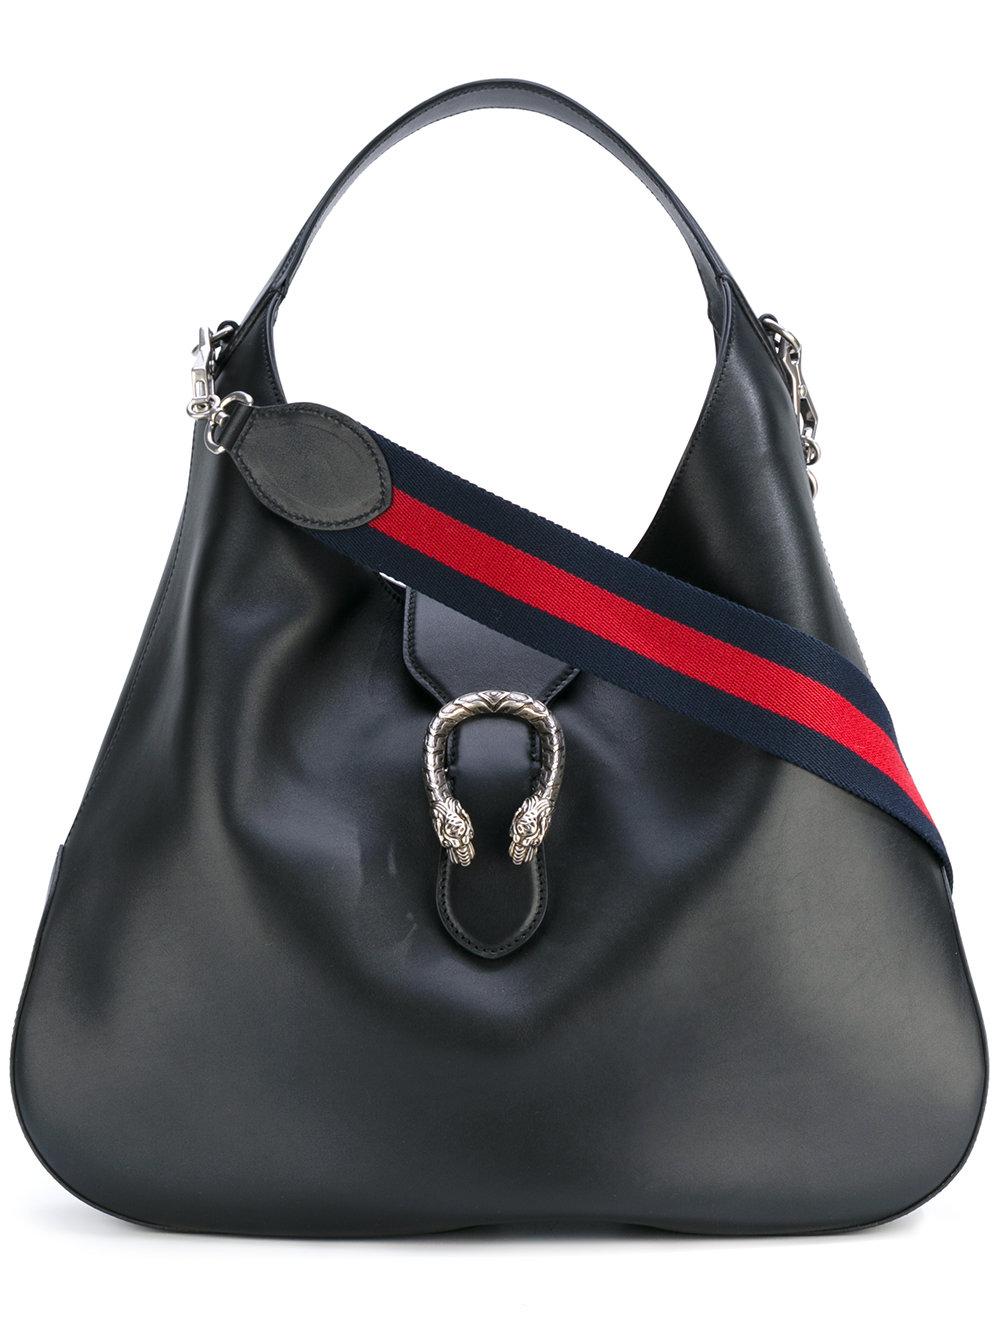 Lyst - Gucci Slouch Shoulder Bag in Black